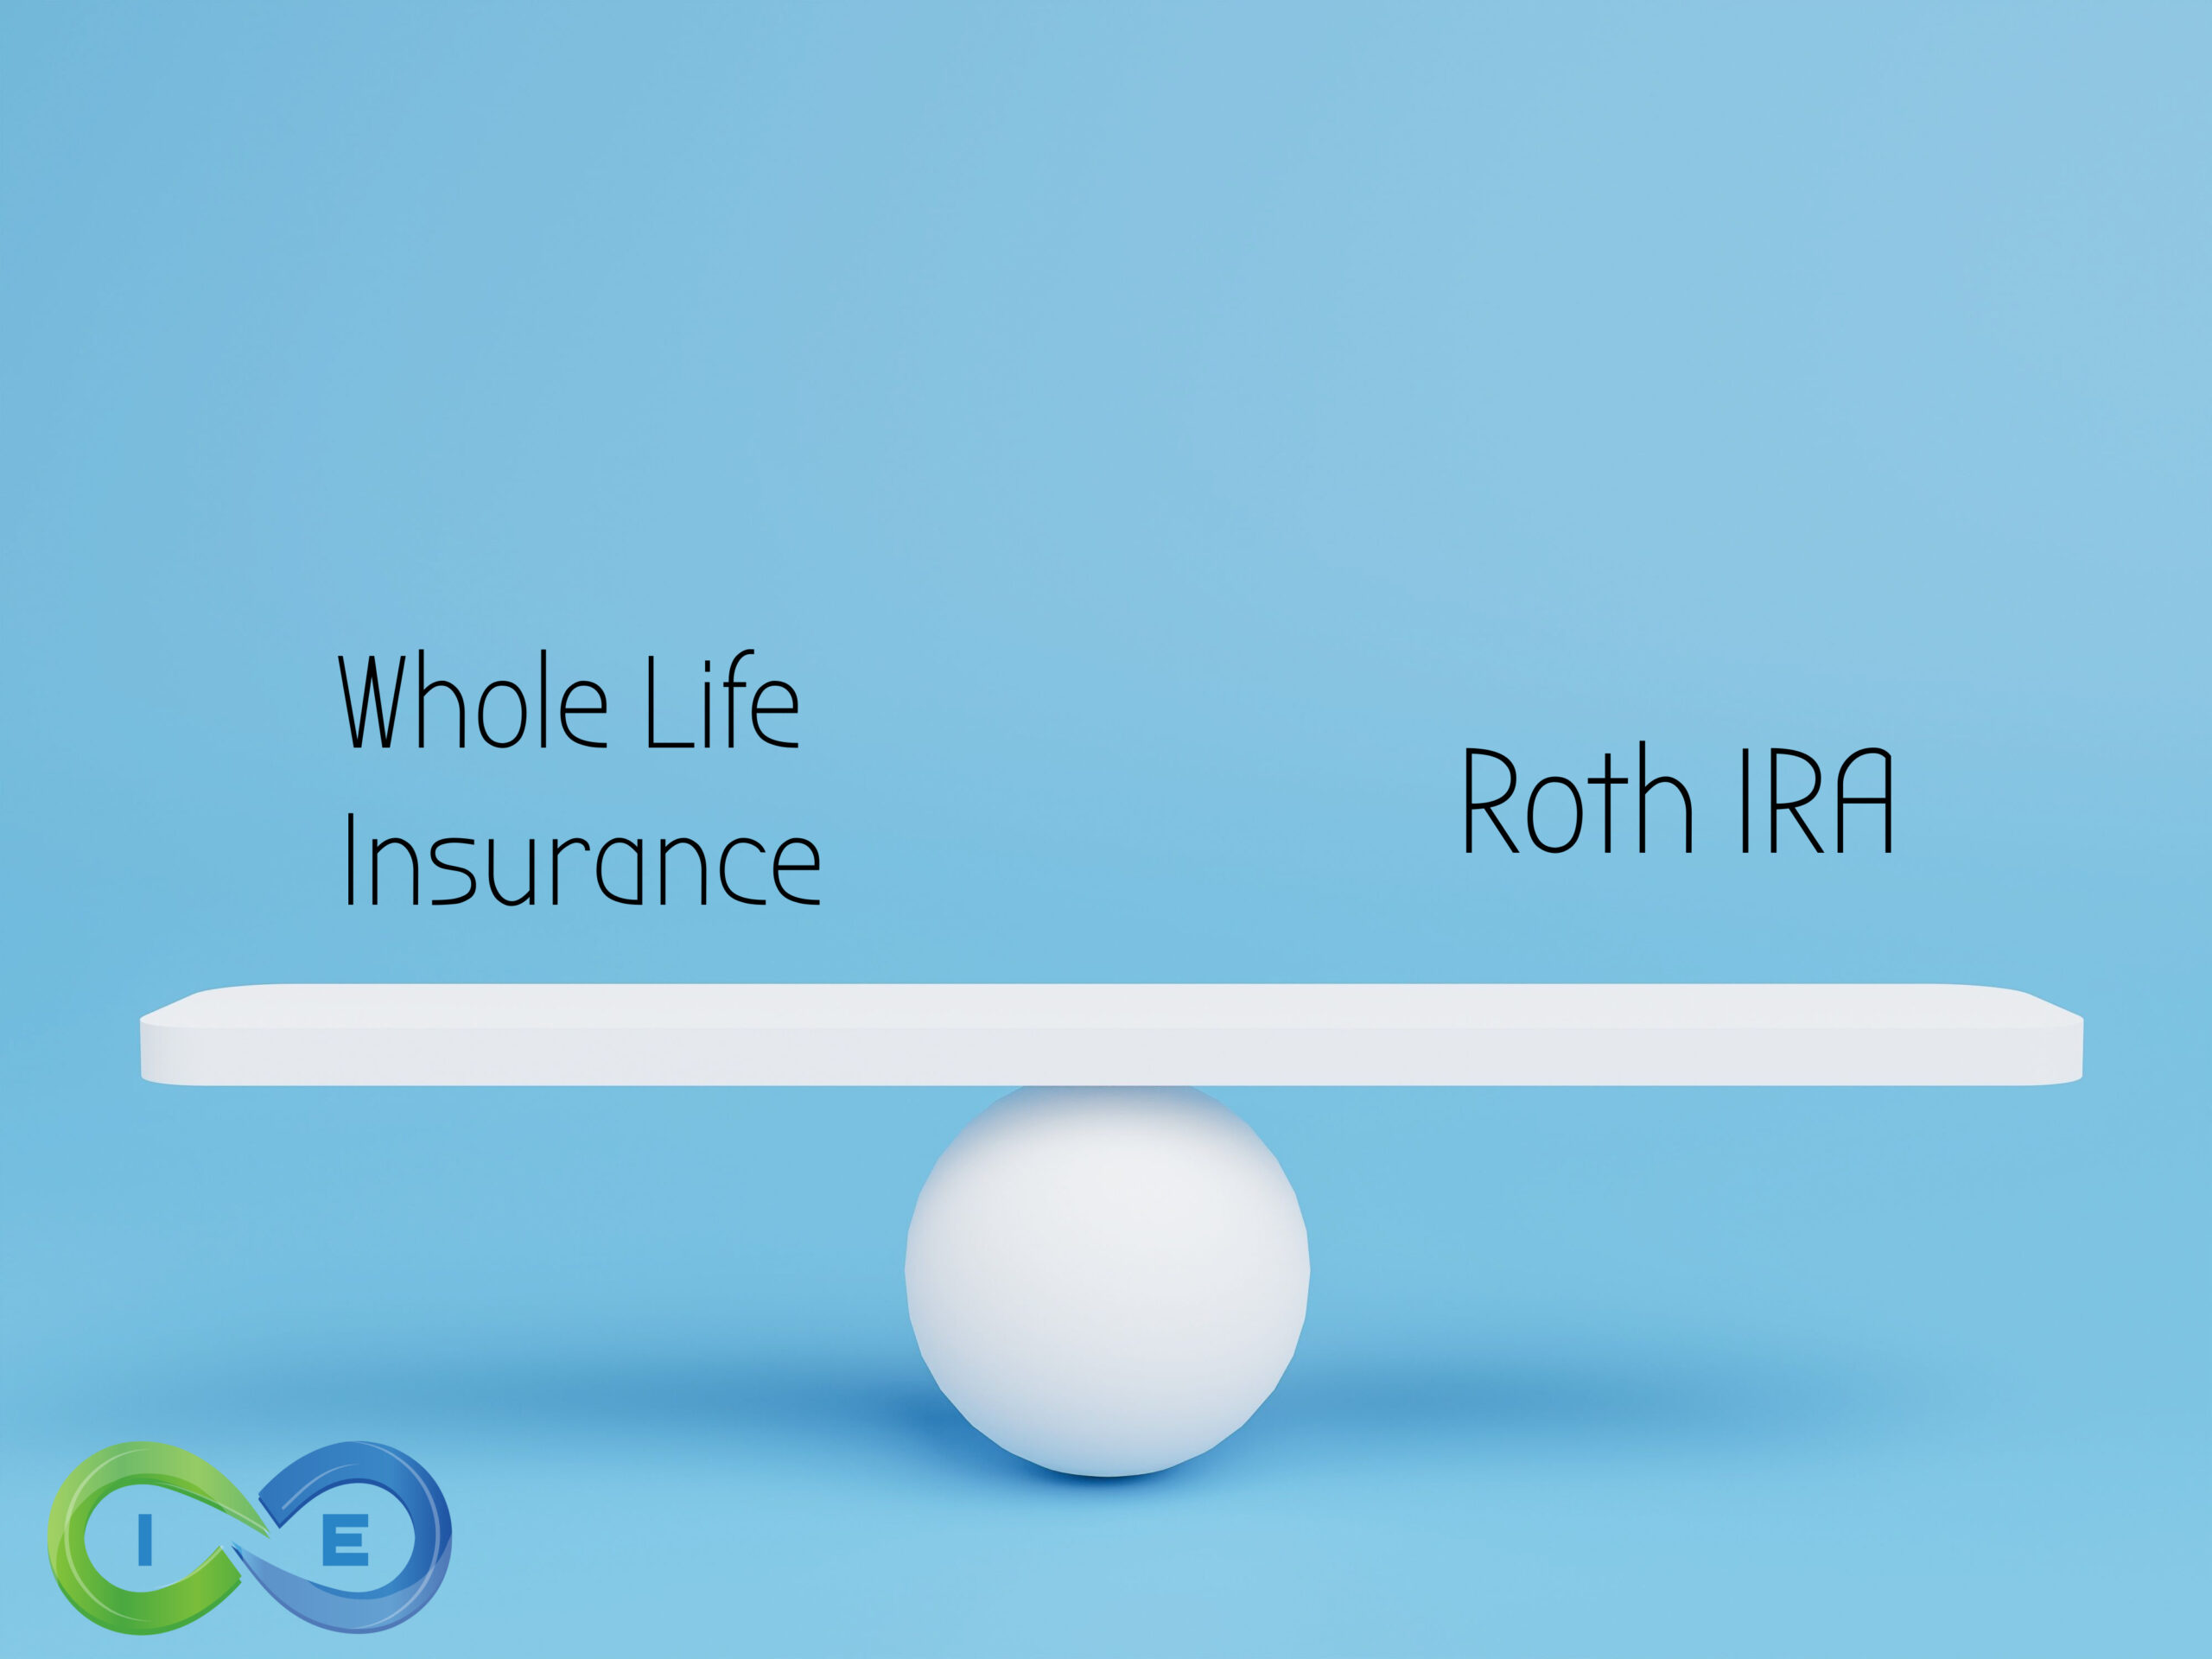 Roth IRA vs Whole Life Insurance